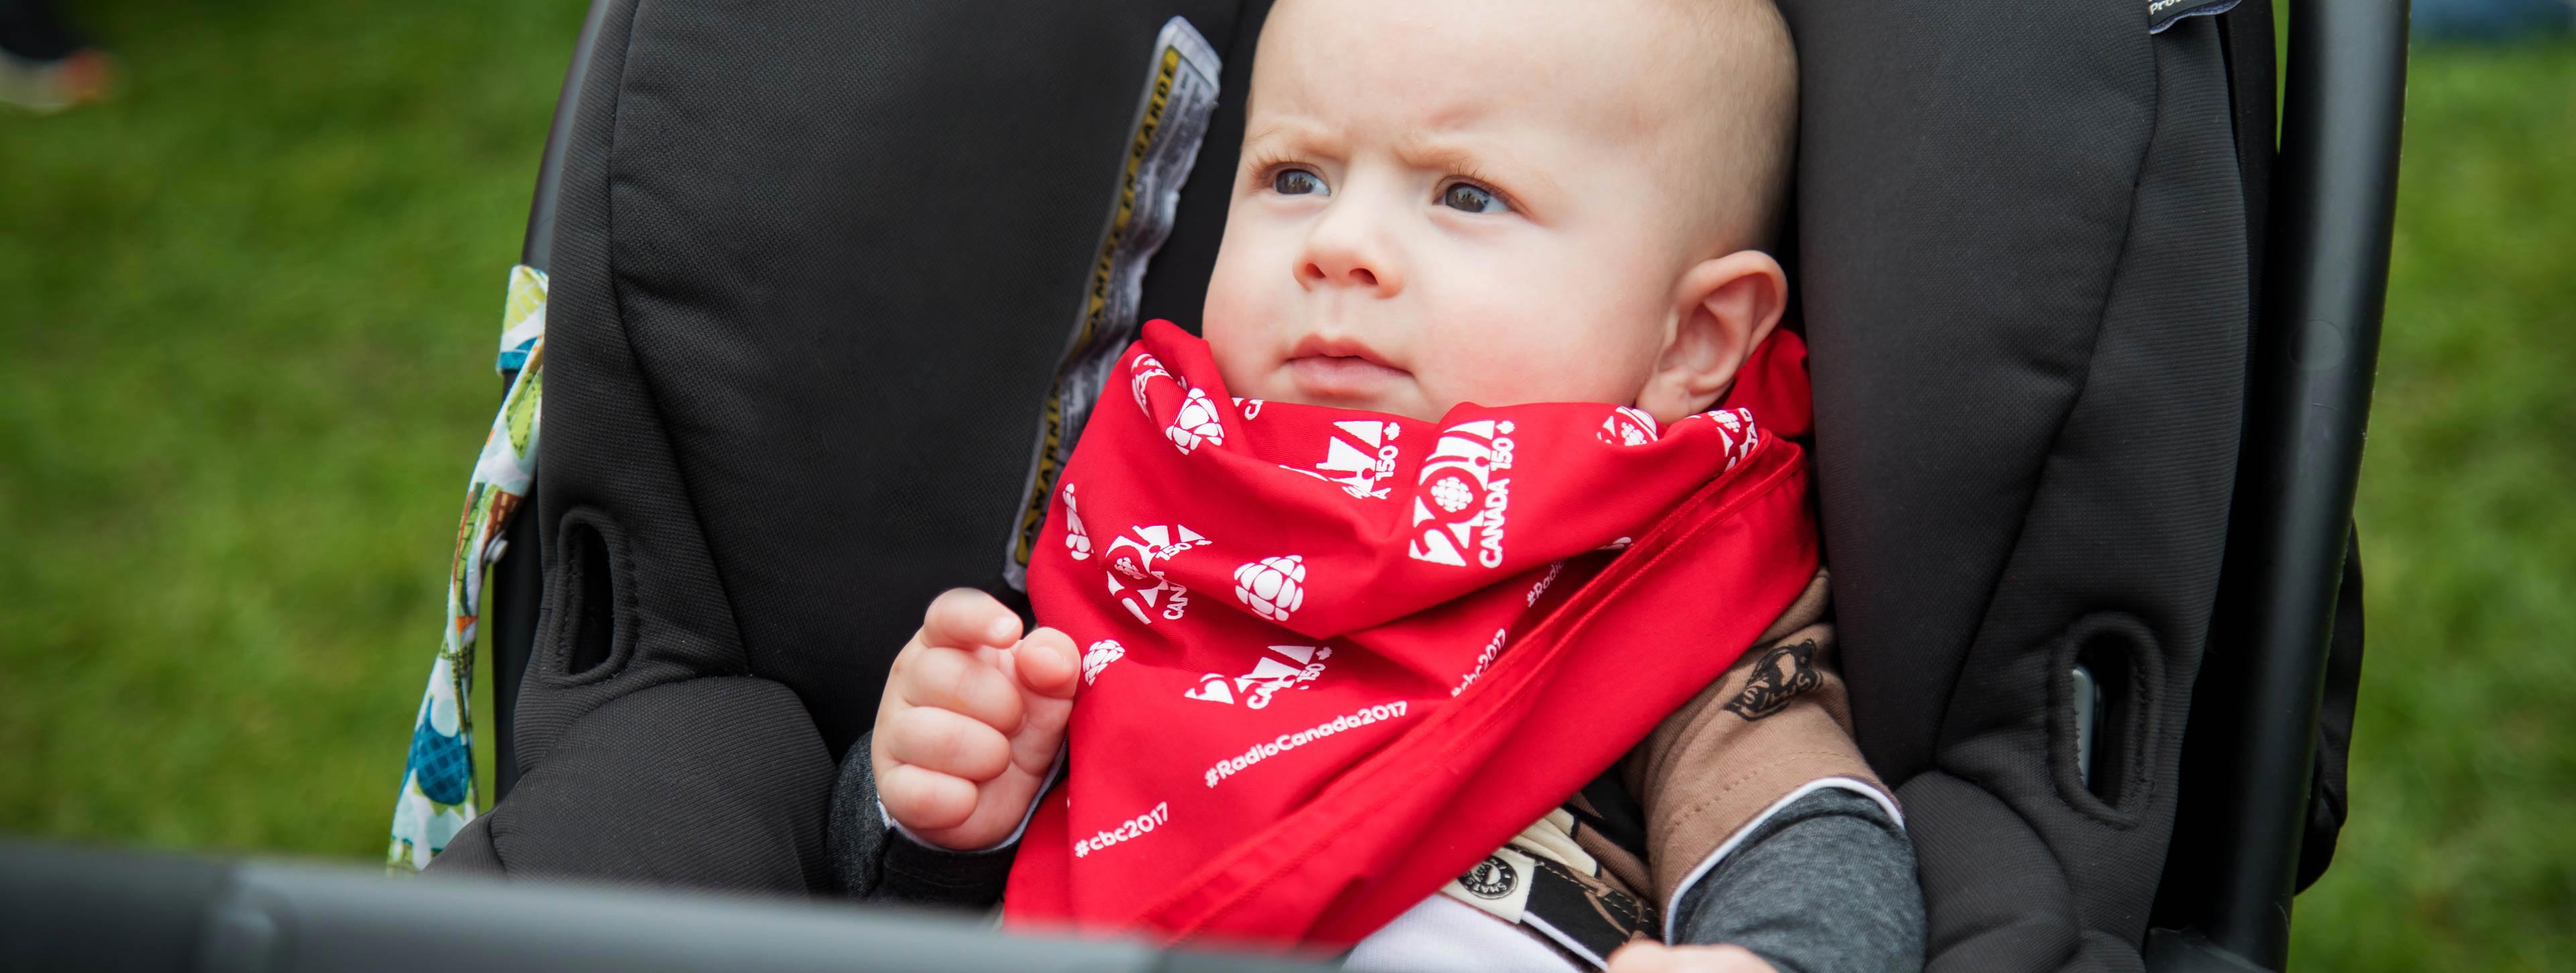 Un bébé porte un foulard de CBC/Radio-Canada pour le 150e.